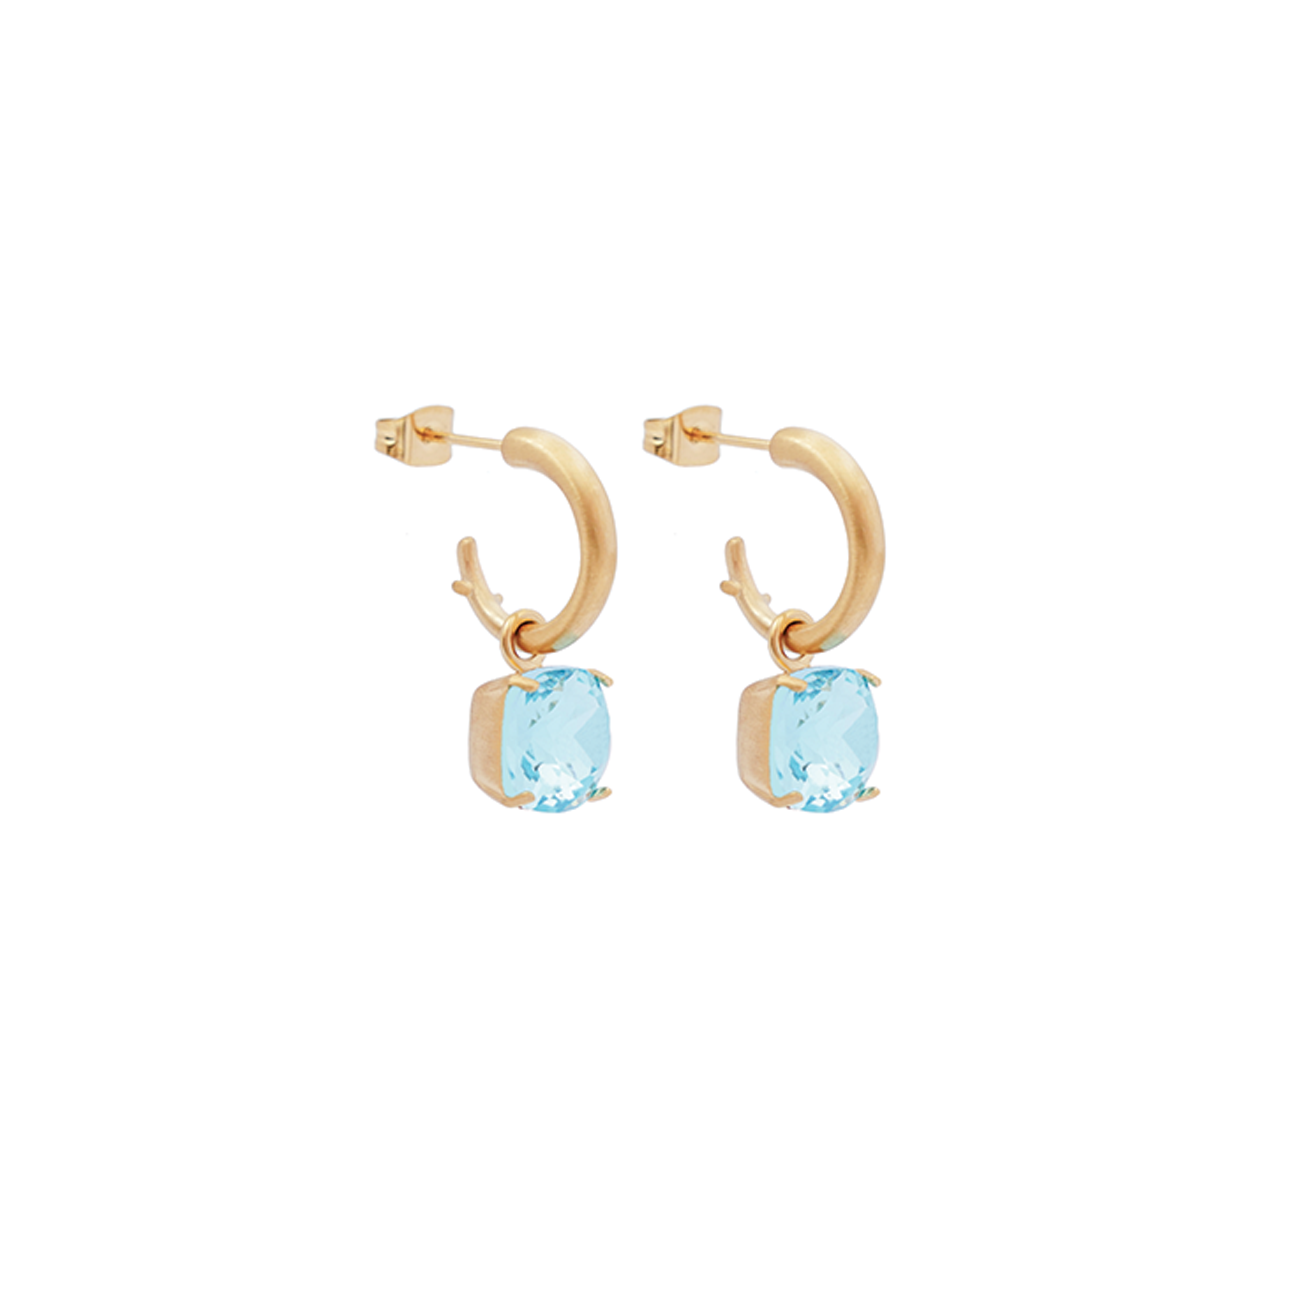 Carla Crystal earrings - Ocean blue